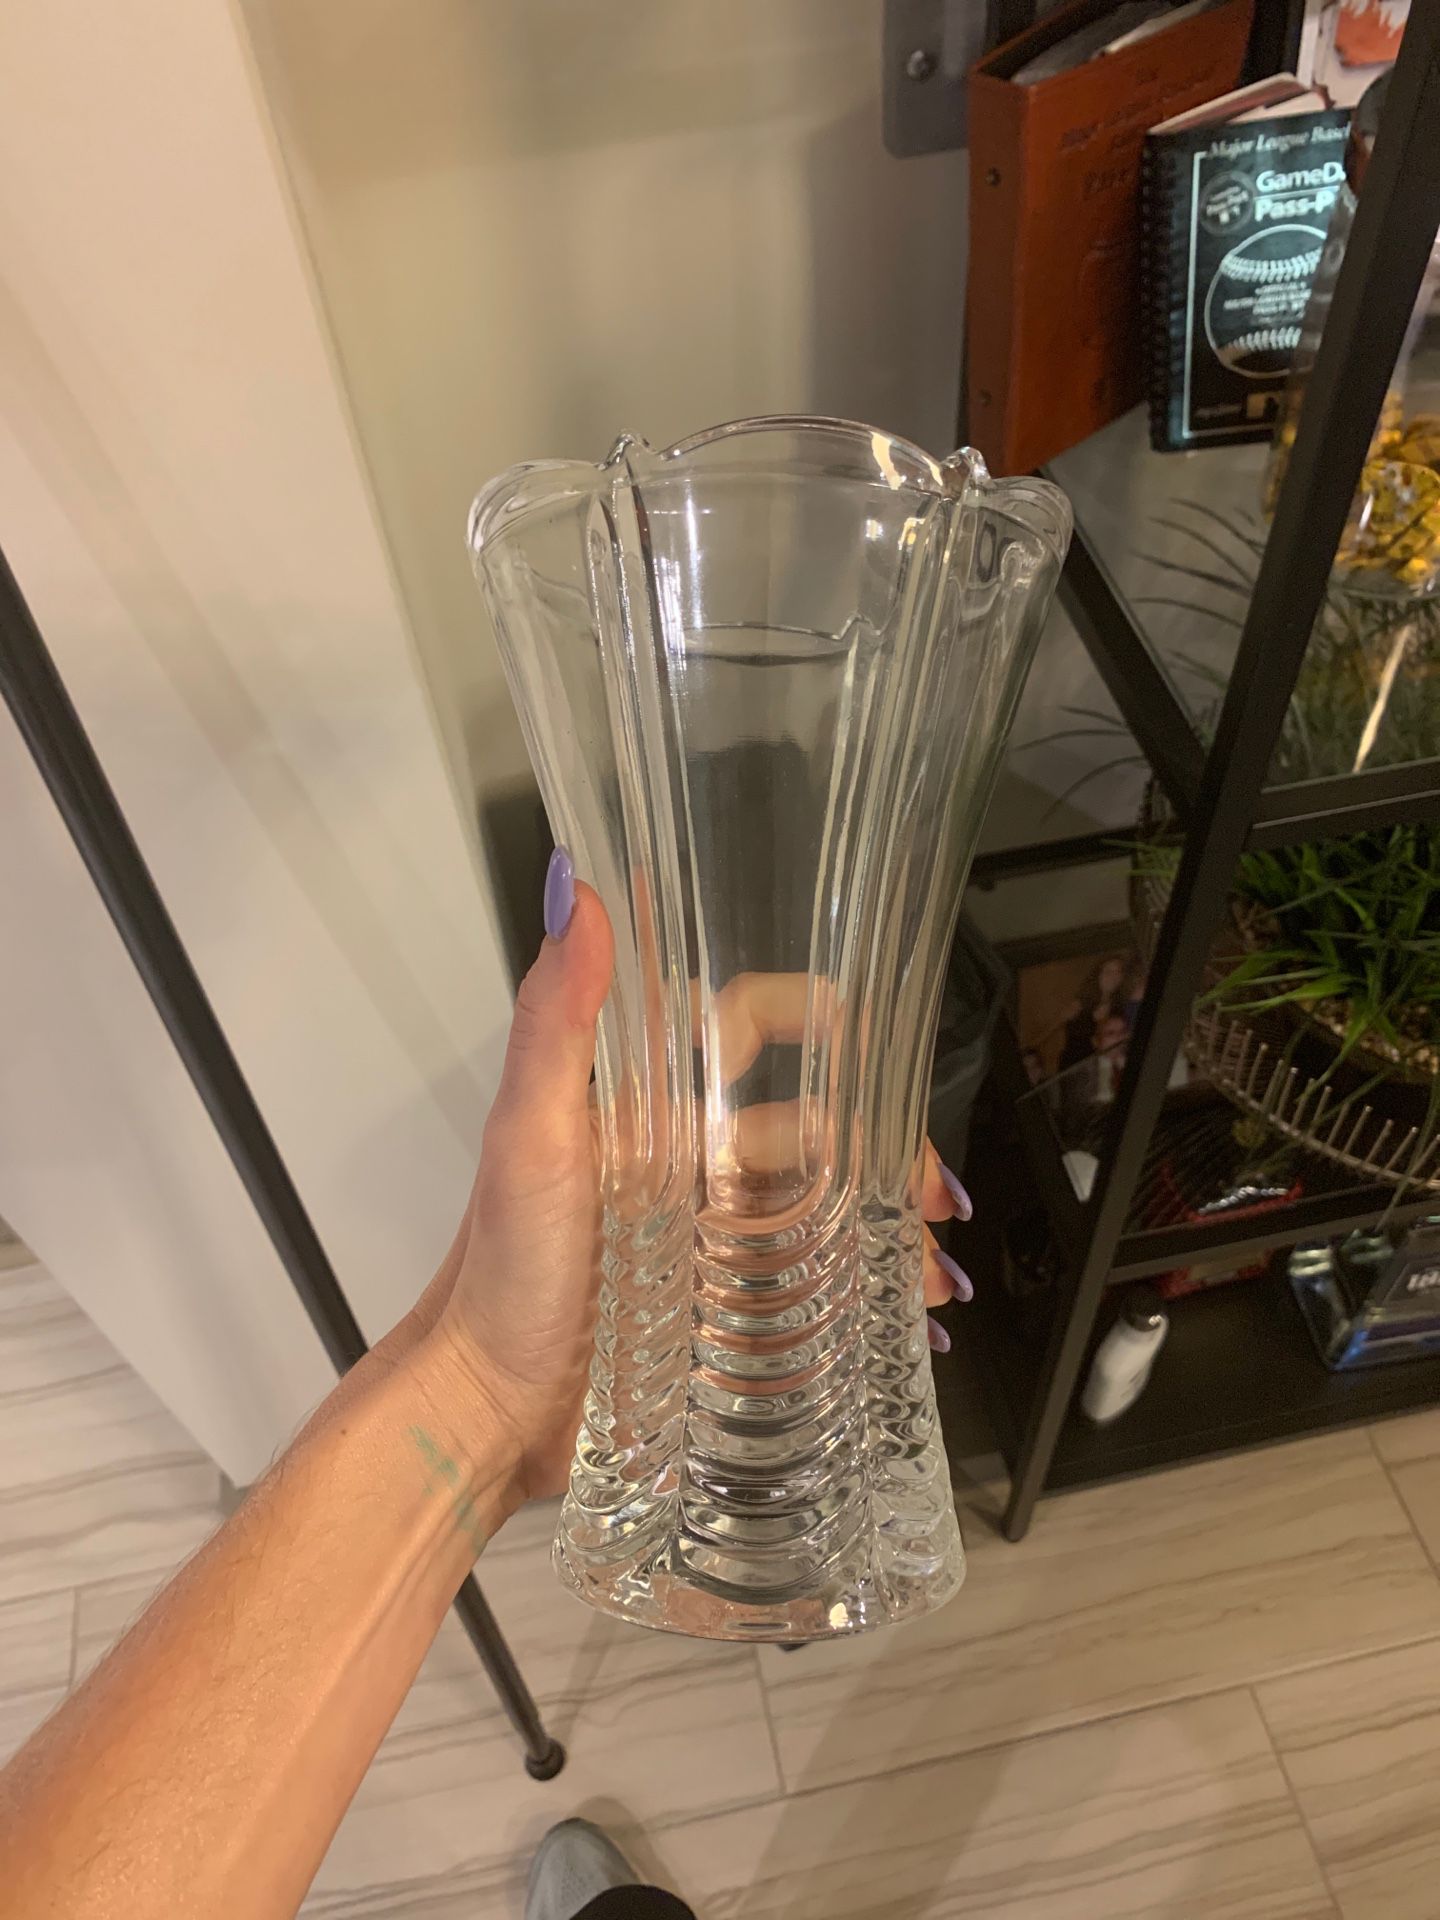 Glass flower vase